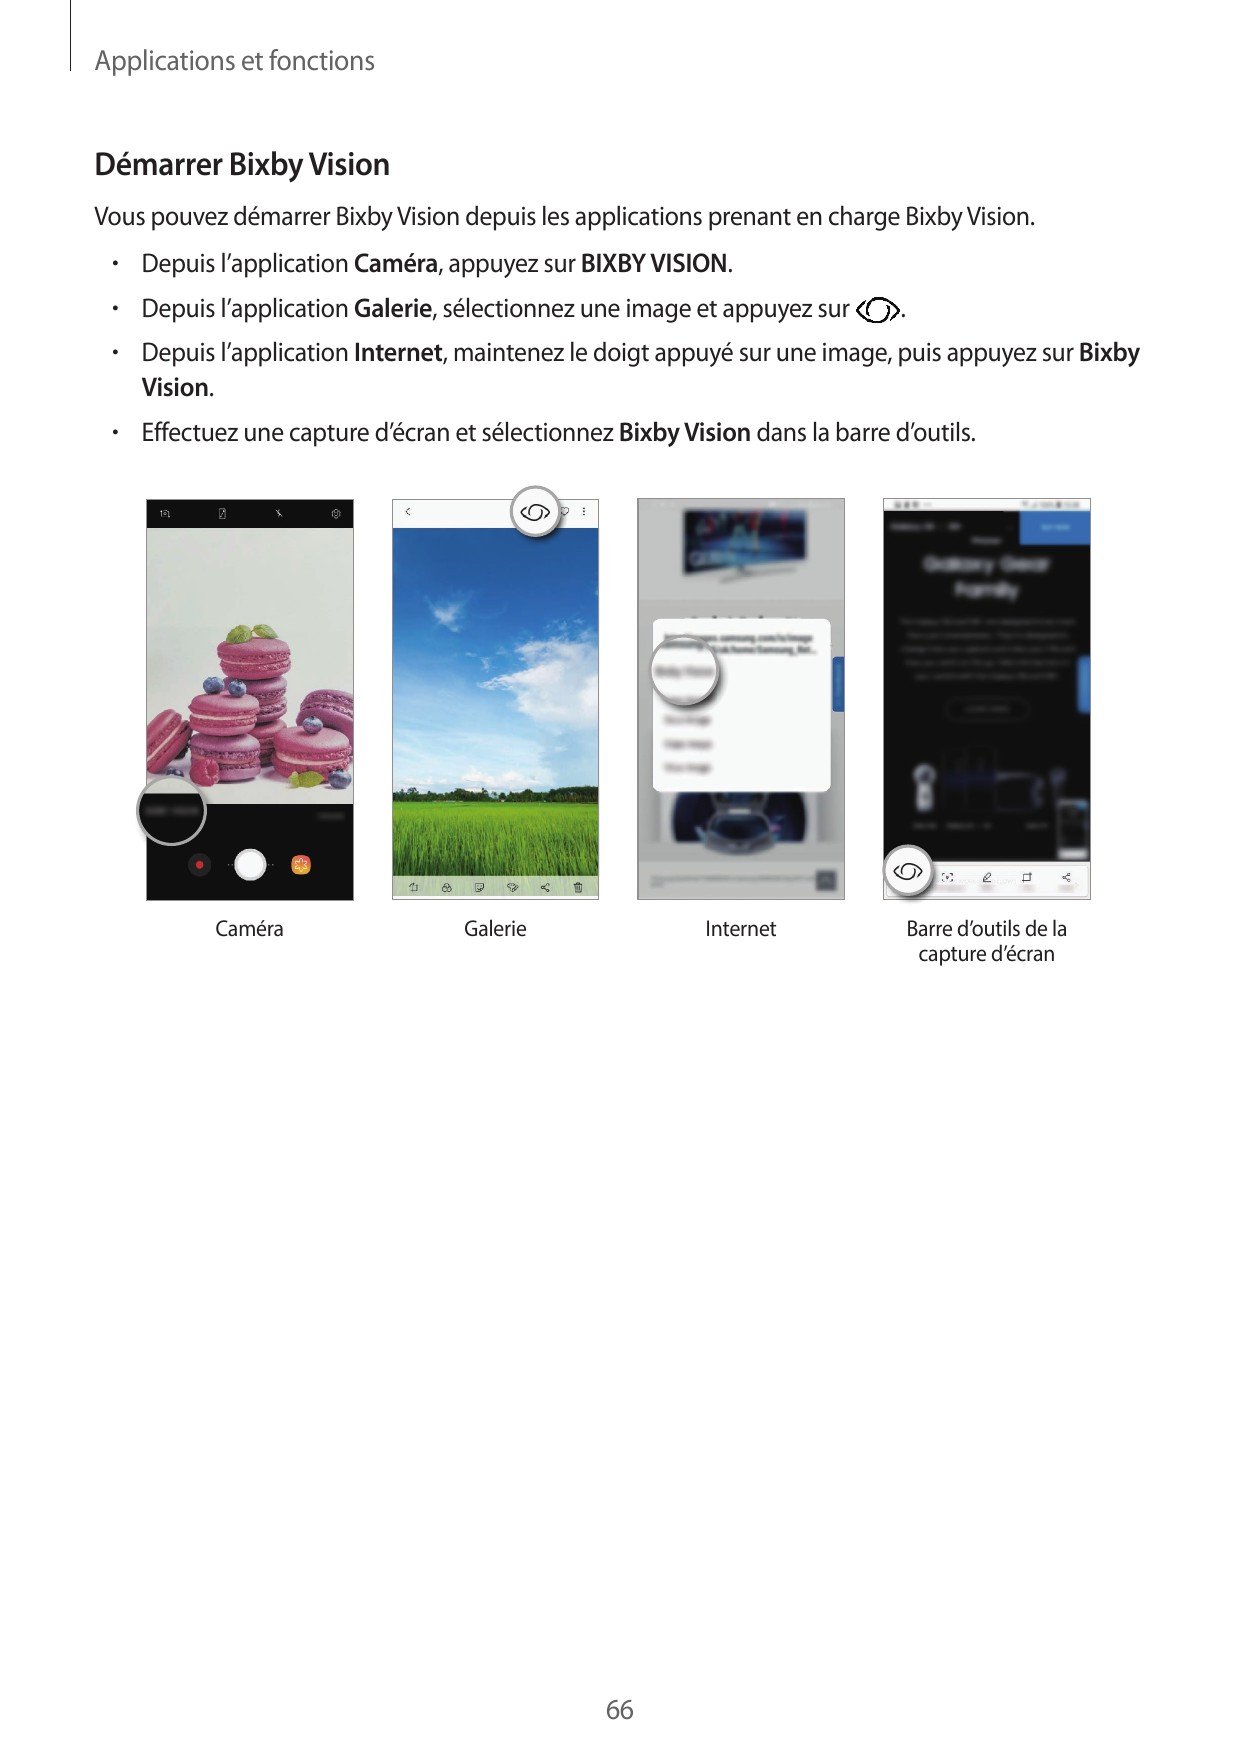 Applications et fonctionsDémarrer Bixby VisionVous pouvez démarrer Bixby Vision depuis les applications prenant en charge Bixby 